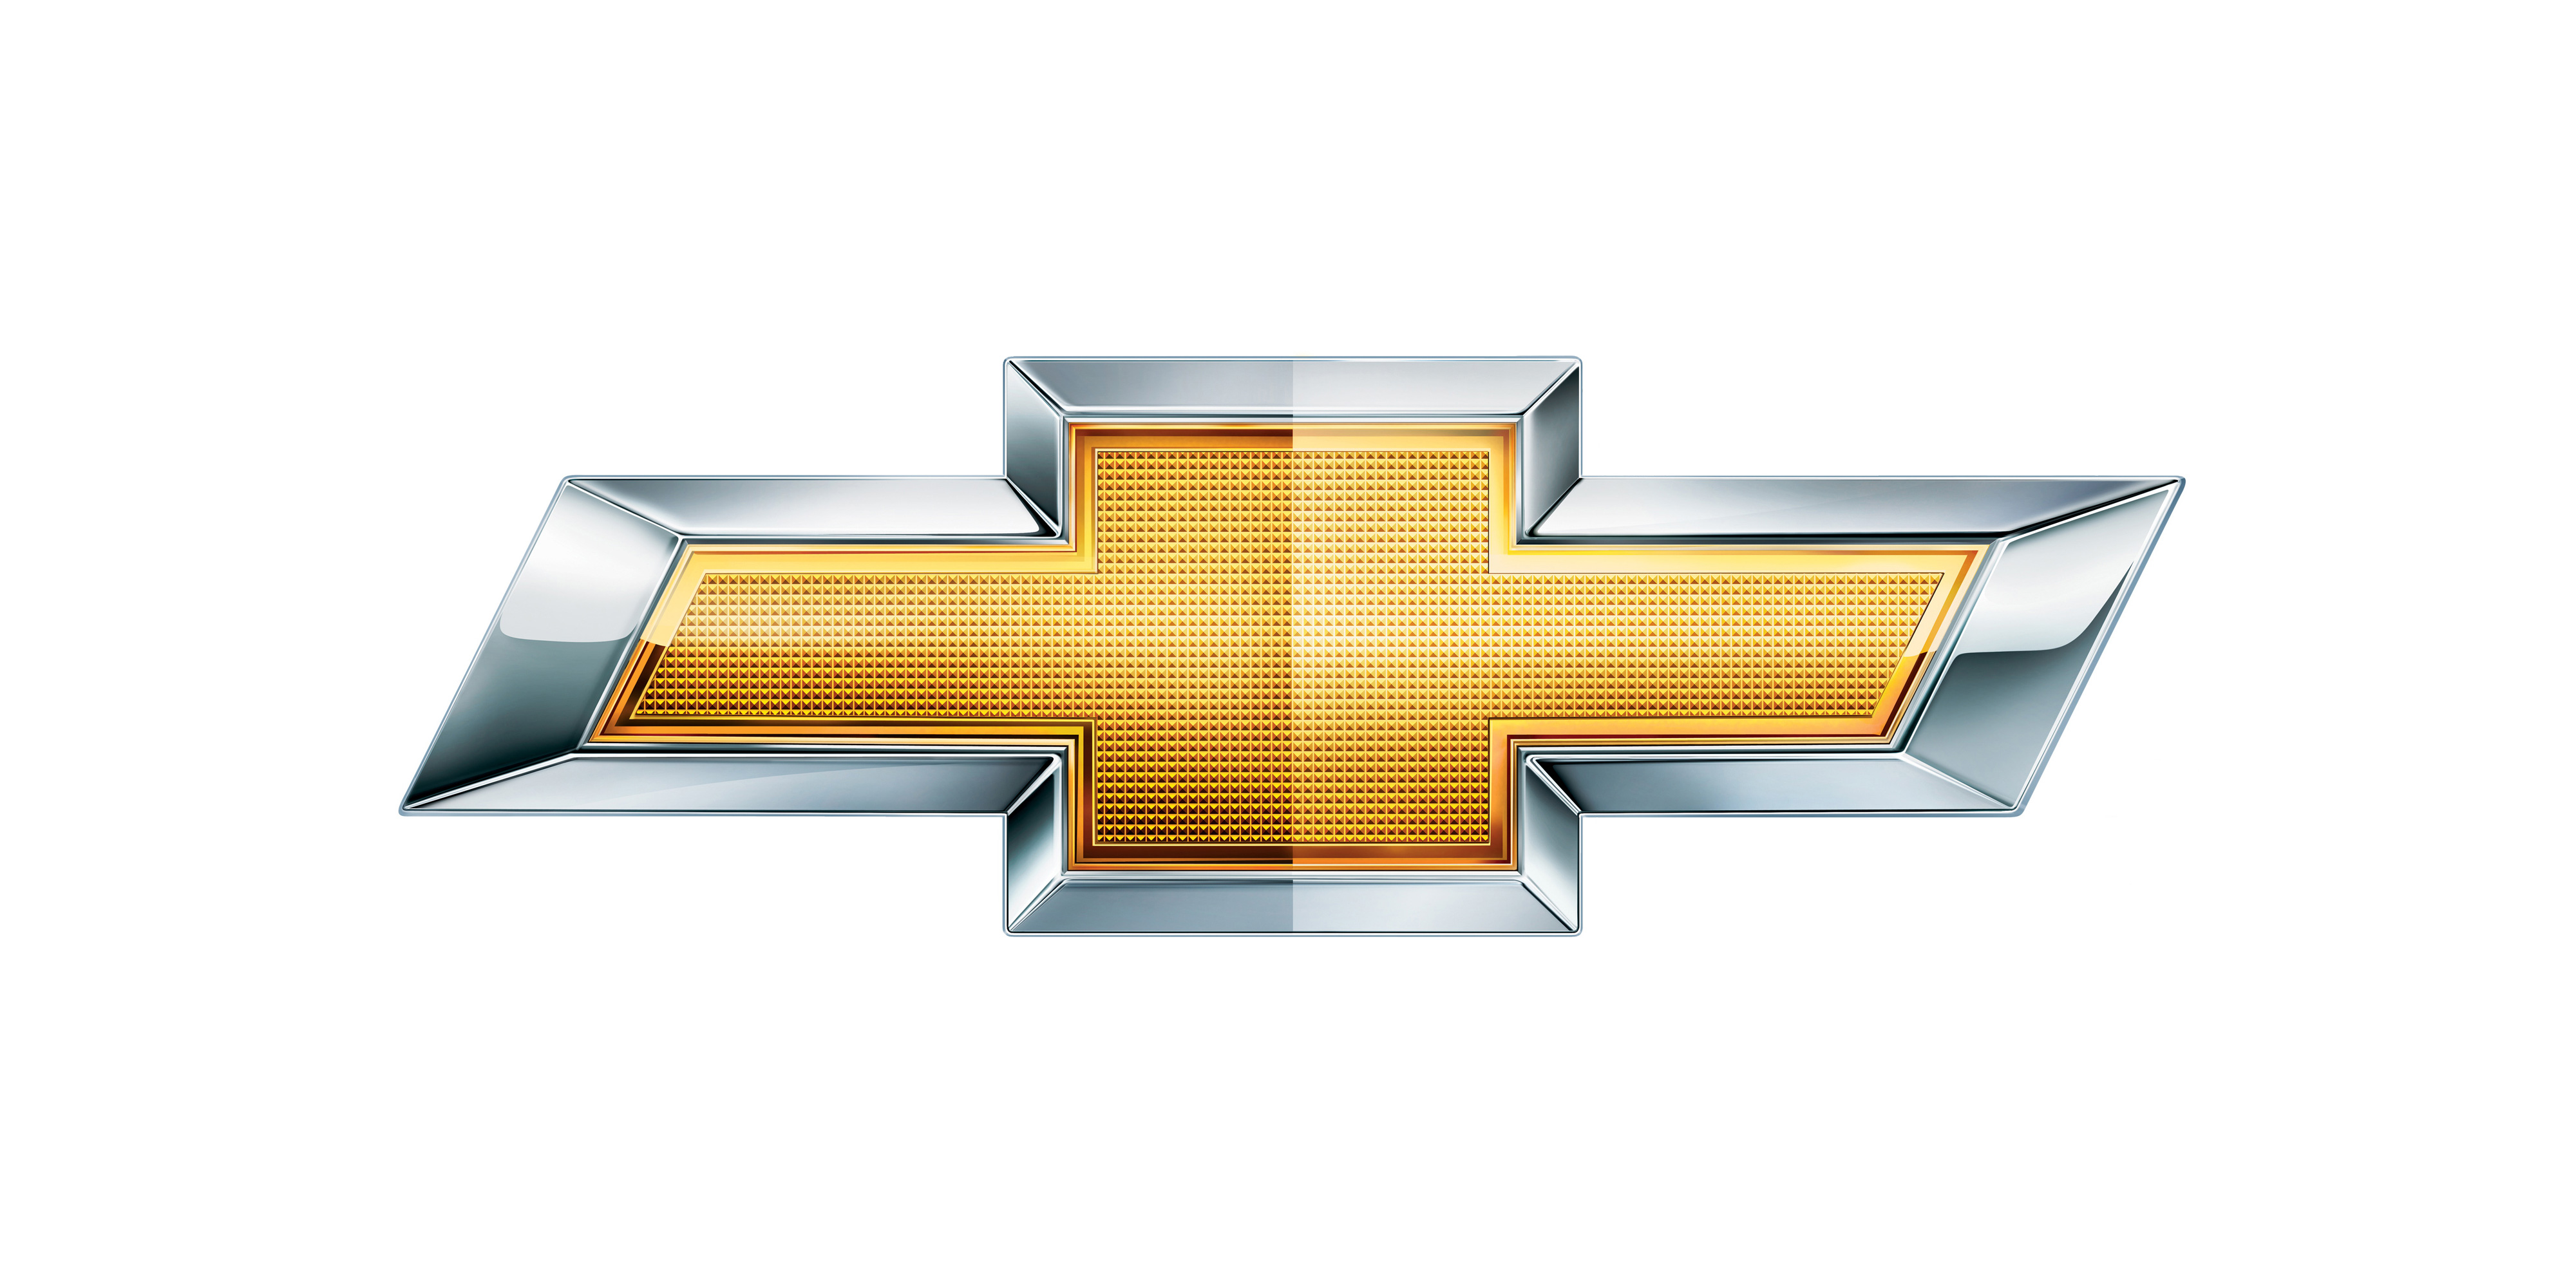 Chevy Symbol Chevrolet Logo